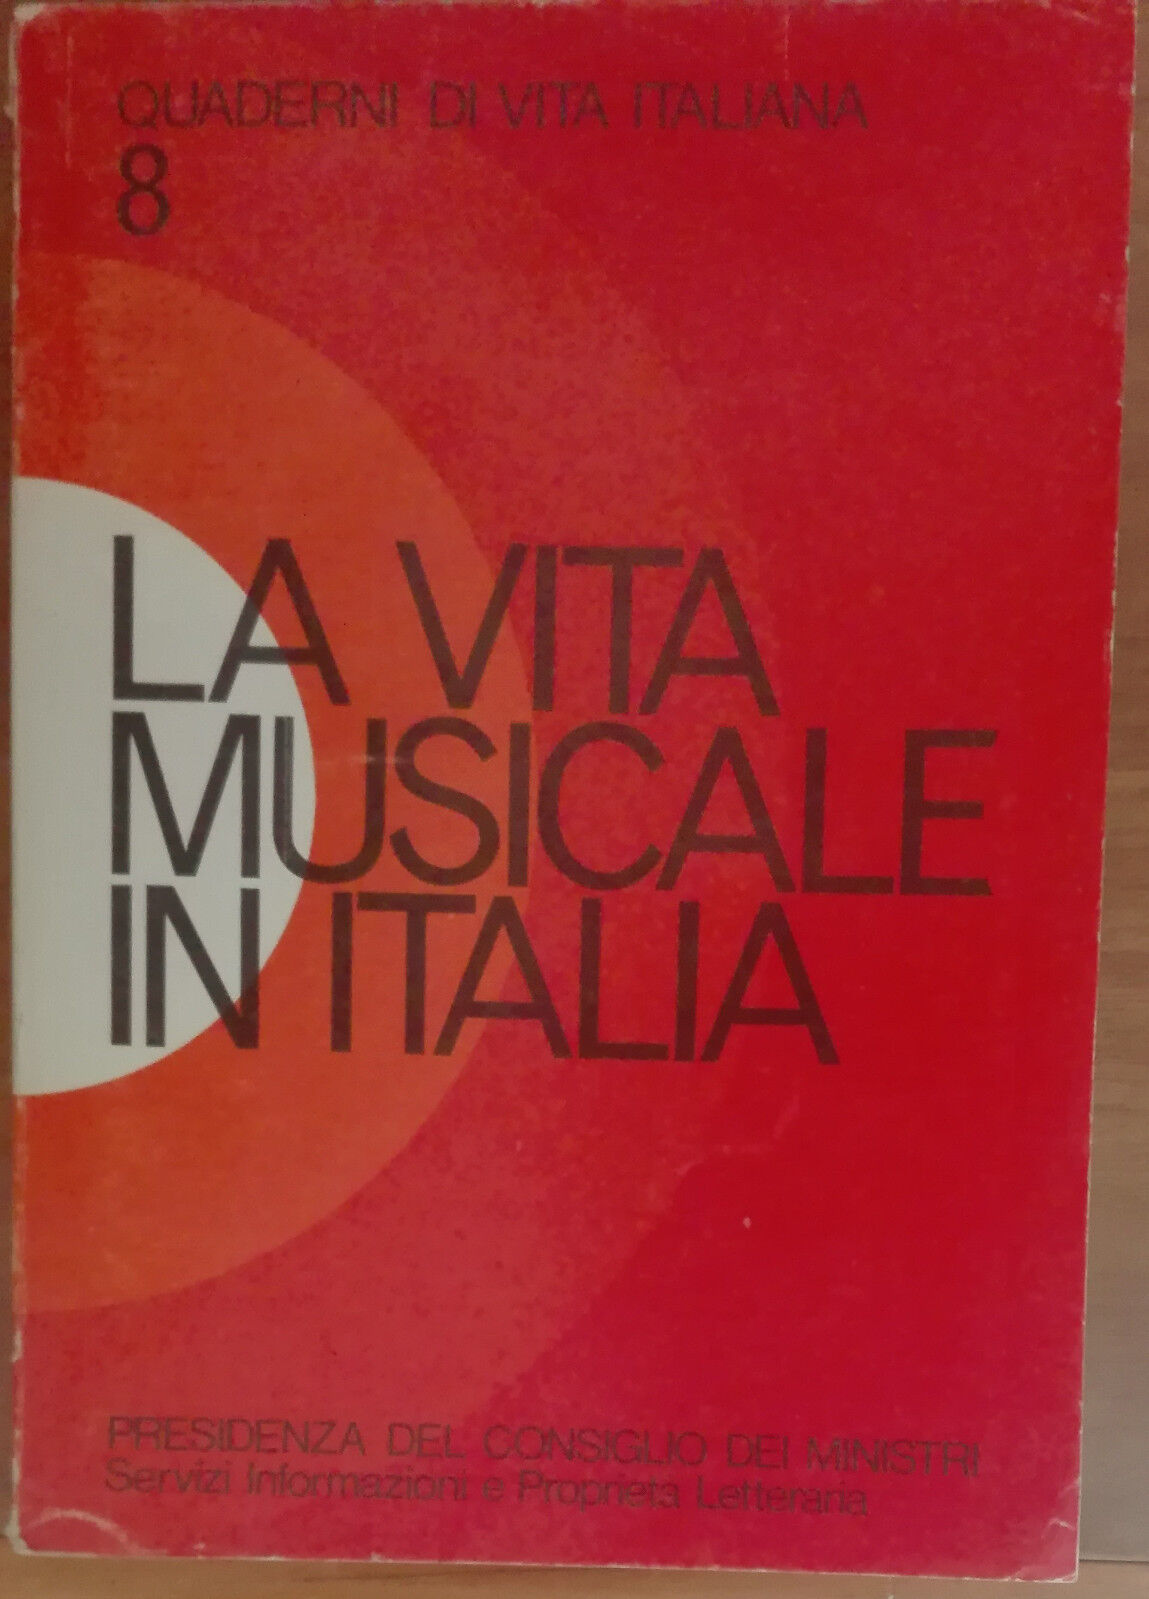 La vita musicale in Italia - AA.VV. - Istituto Poligrafico dello Stato,1974 - A